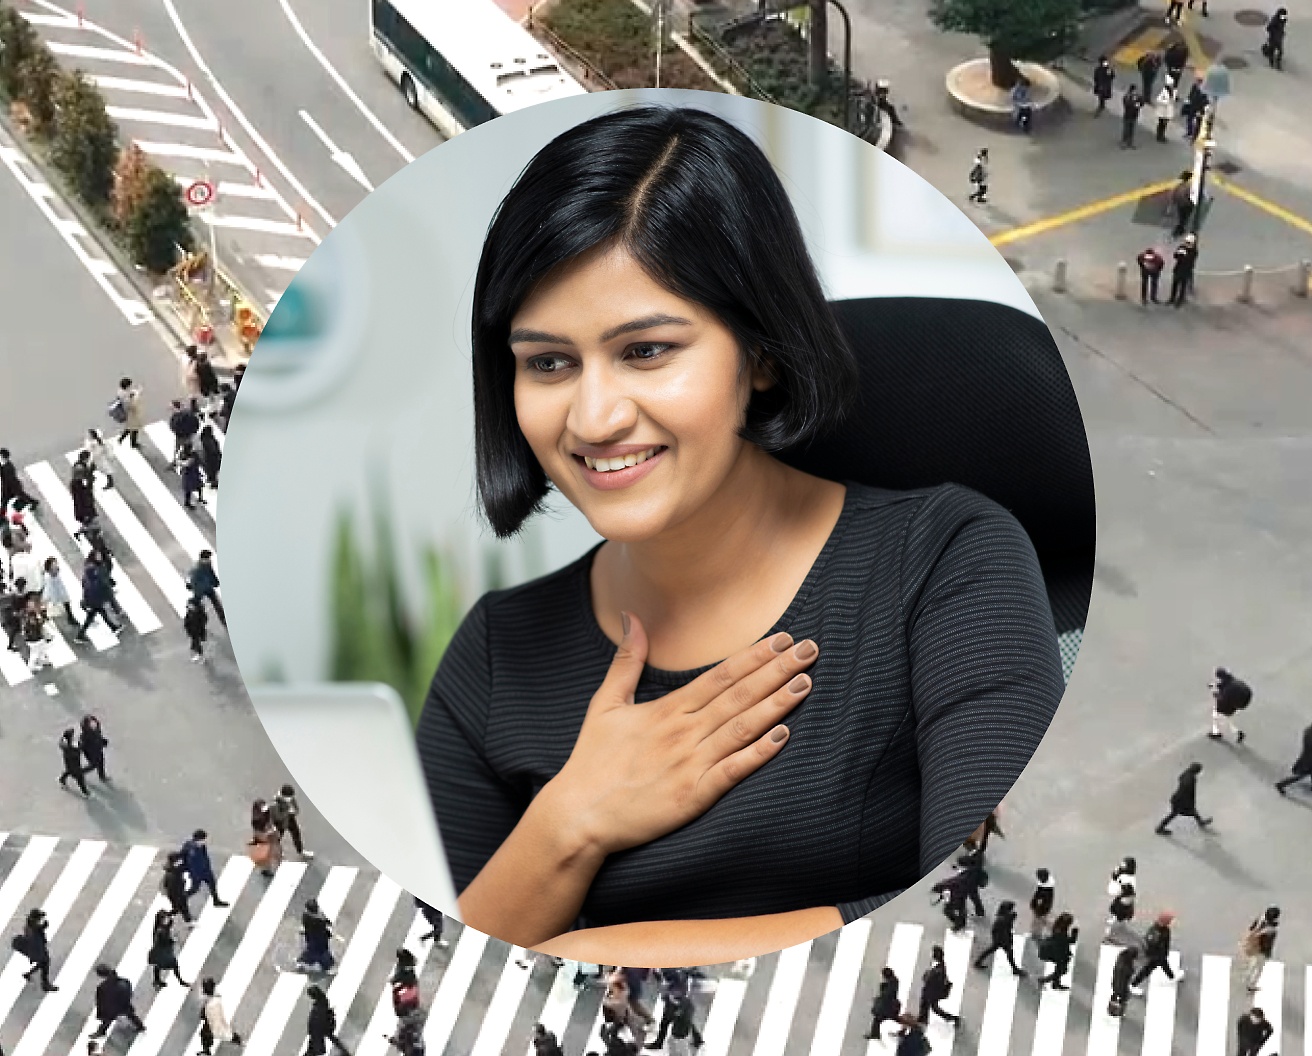 Una donna con tiene una mano contro il petto mentre lavora al suo computer portatile, con sullo sfondo l’immagine di un incrocio stradale con persone che passano